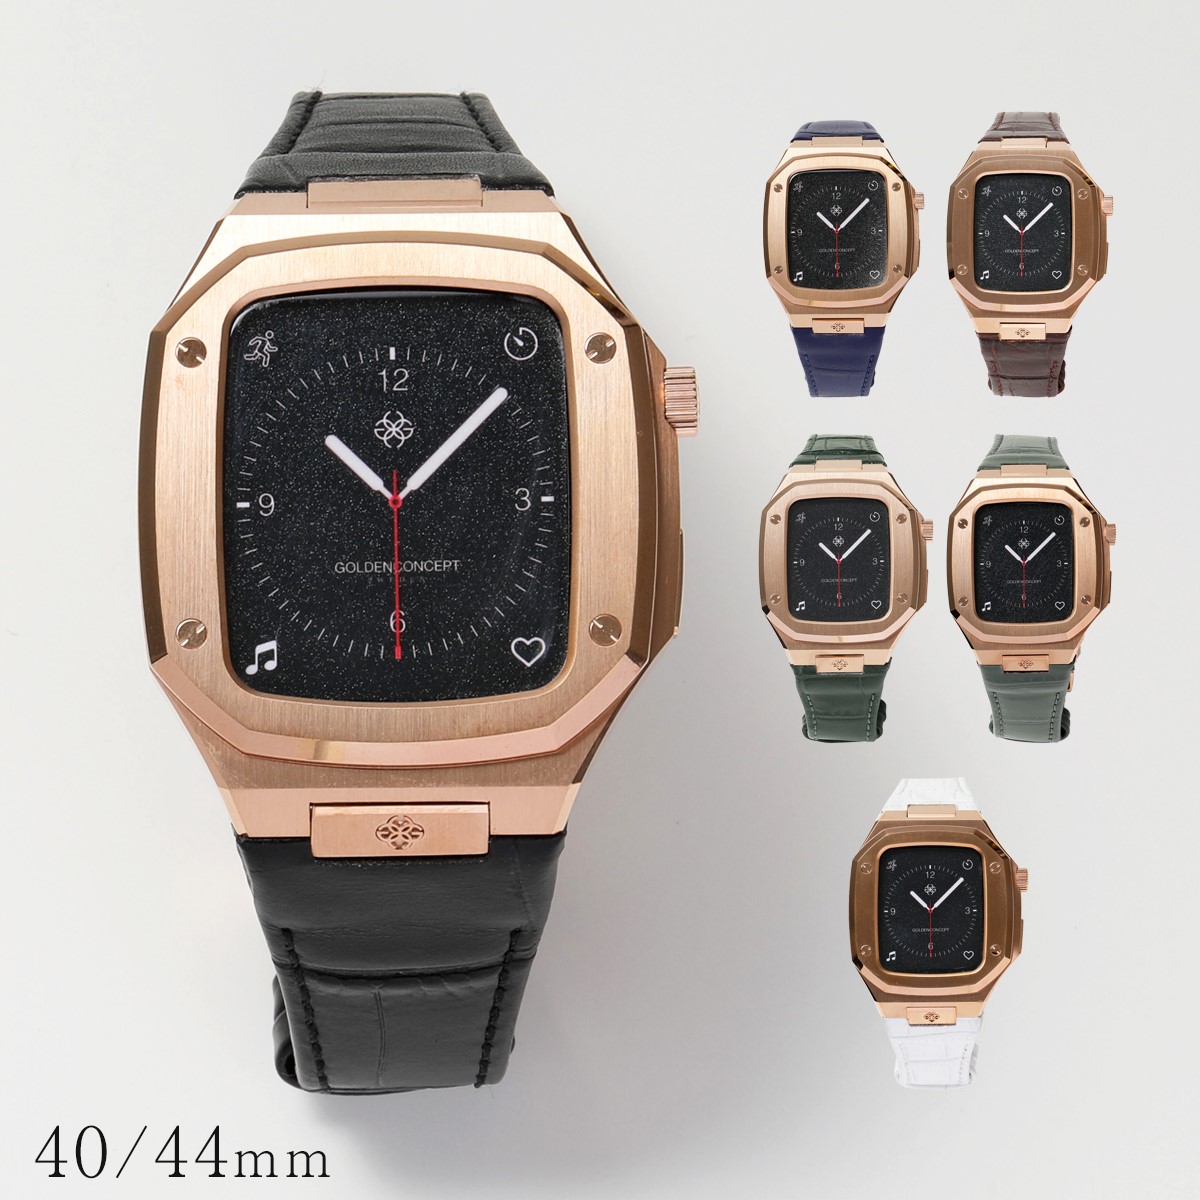 GOLDEN CONCEPT ゴールデンコンセプト Apple Watch Case アップルウォッチケース CL40 CL44 Rose Gold  メンズ ステンレススチール レザーベルト カラー6色 | インポートセレクト musee